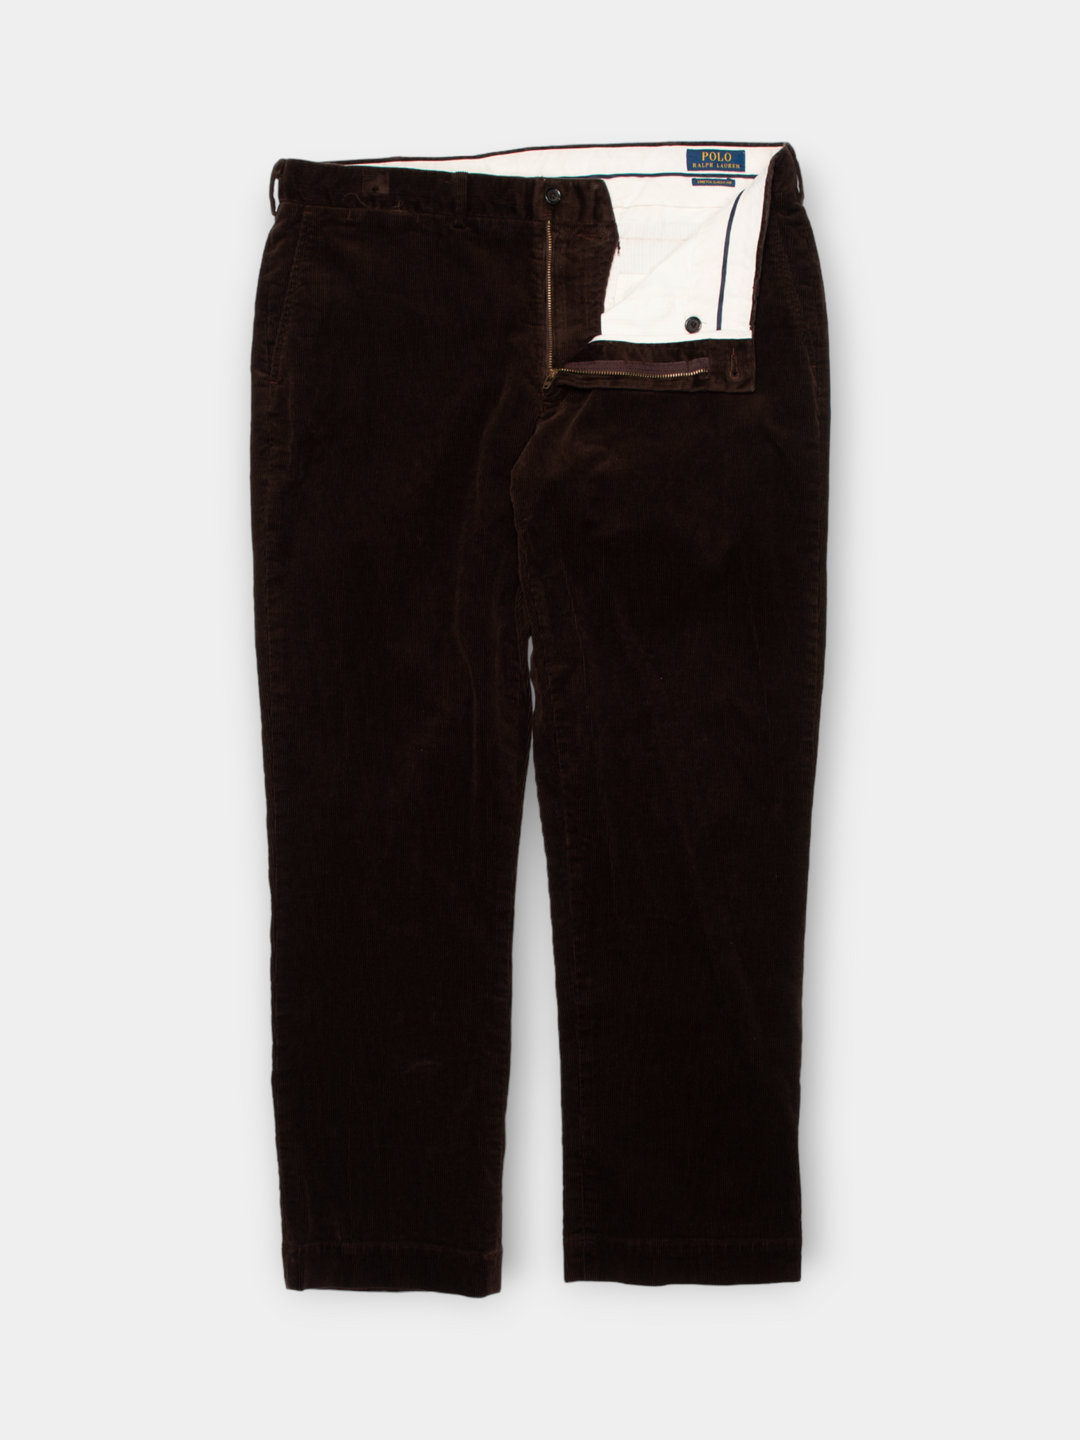 Modern Ralph Lauren Corduroy Pants (36")